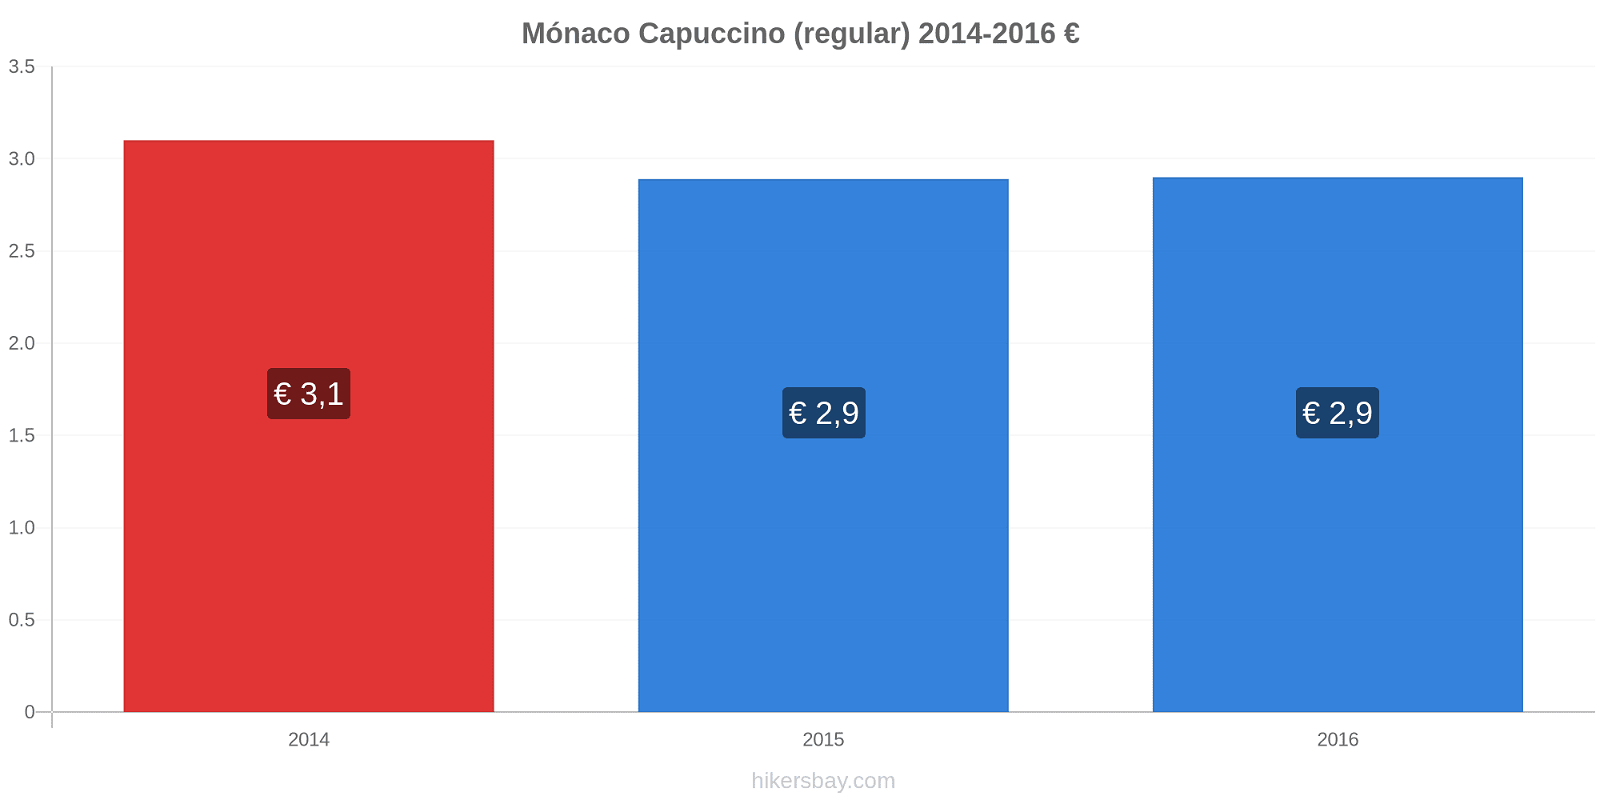 Mónaco variação de preço Capuccino (regular) hikersbay.com